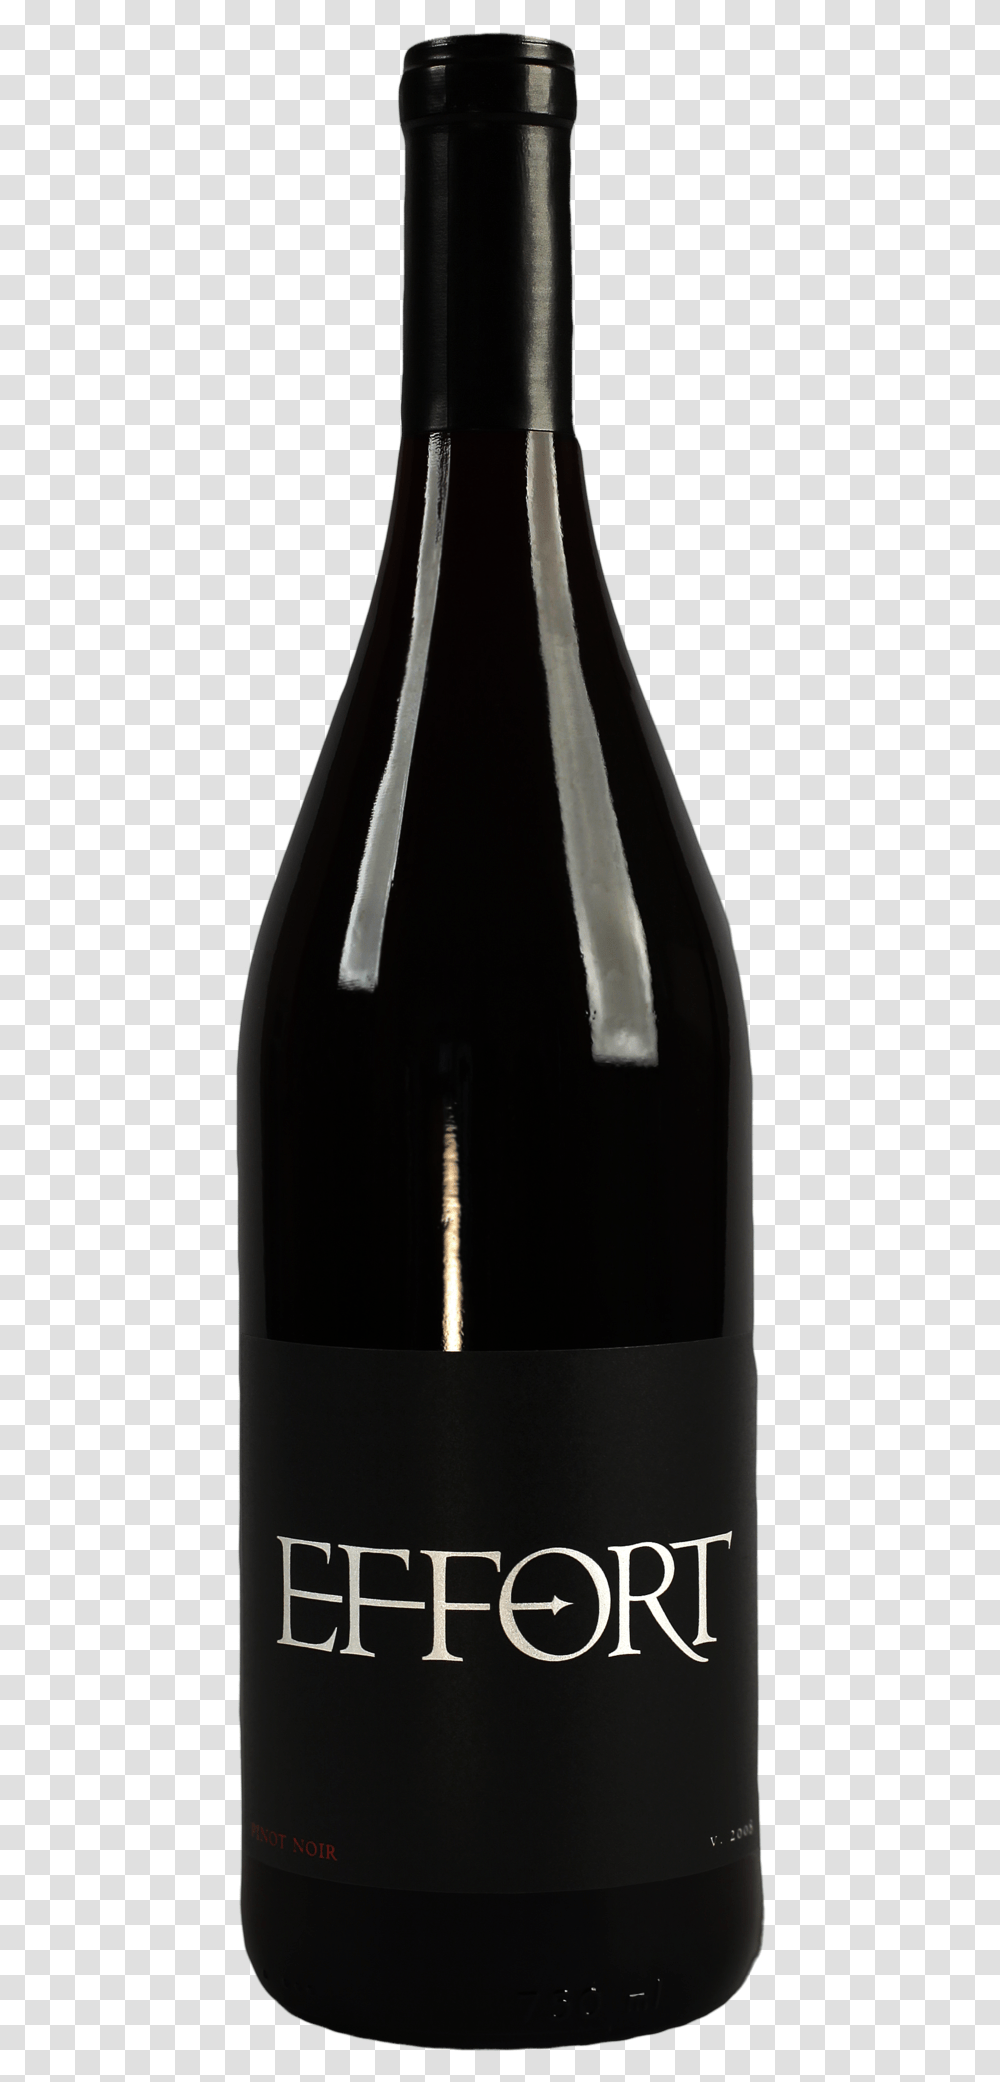 Effort Pinot Noir Glass Bottle, Wine, Alcohol, Beverage, Drink Transparent Png